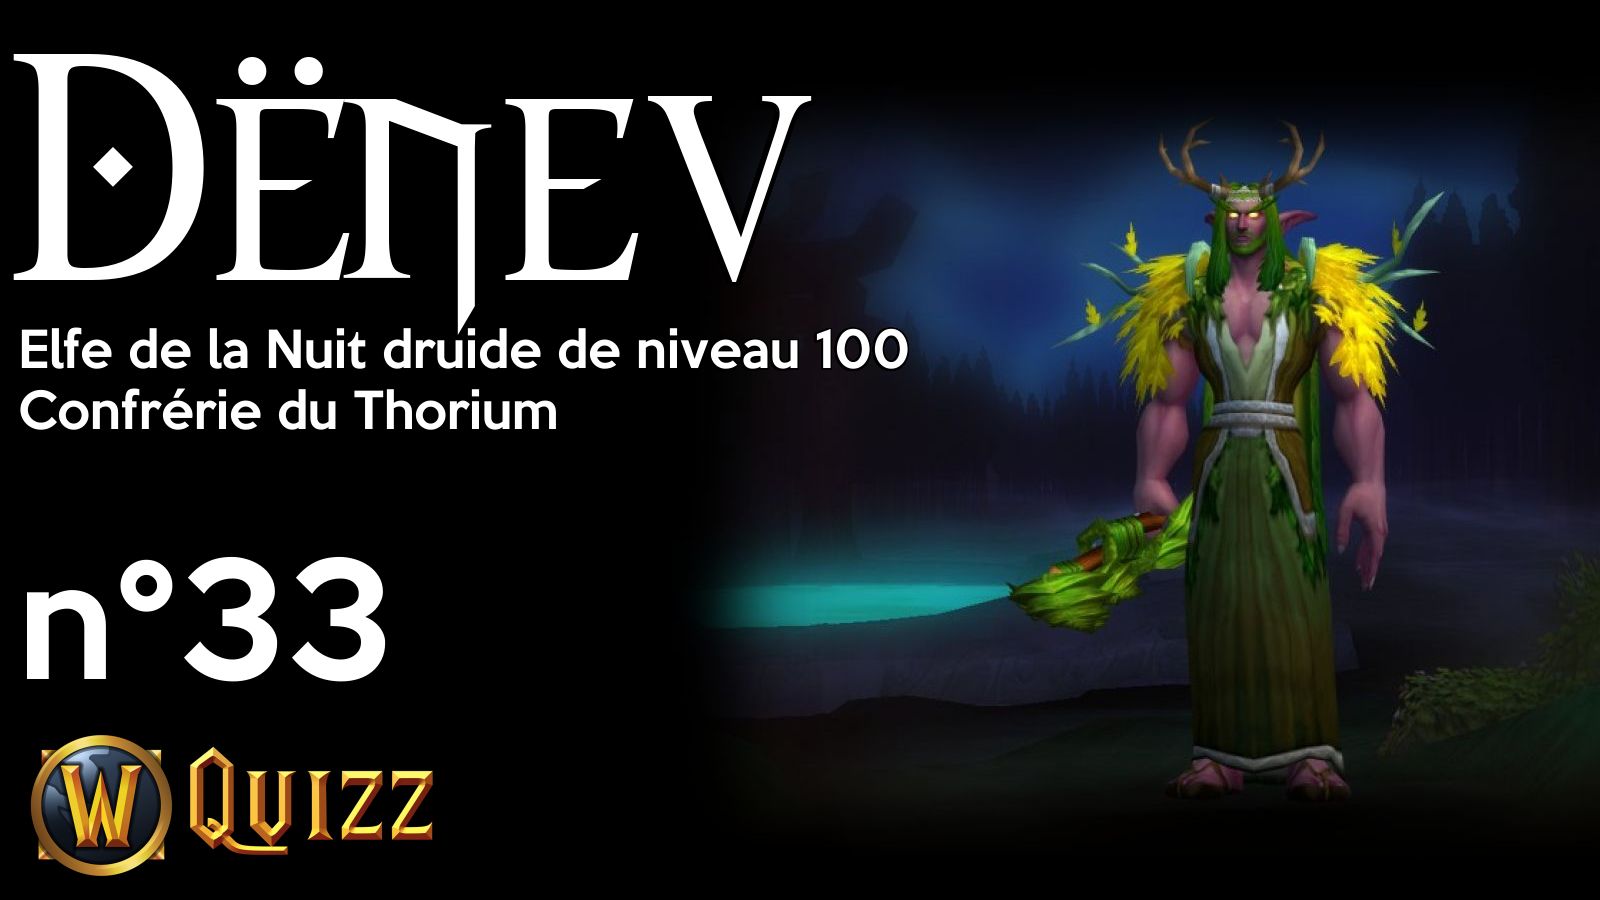 Dënev, Elfe de la Nuit druide de niveau 100, Confrérie du Thorium